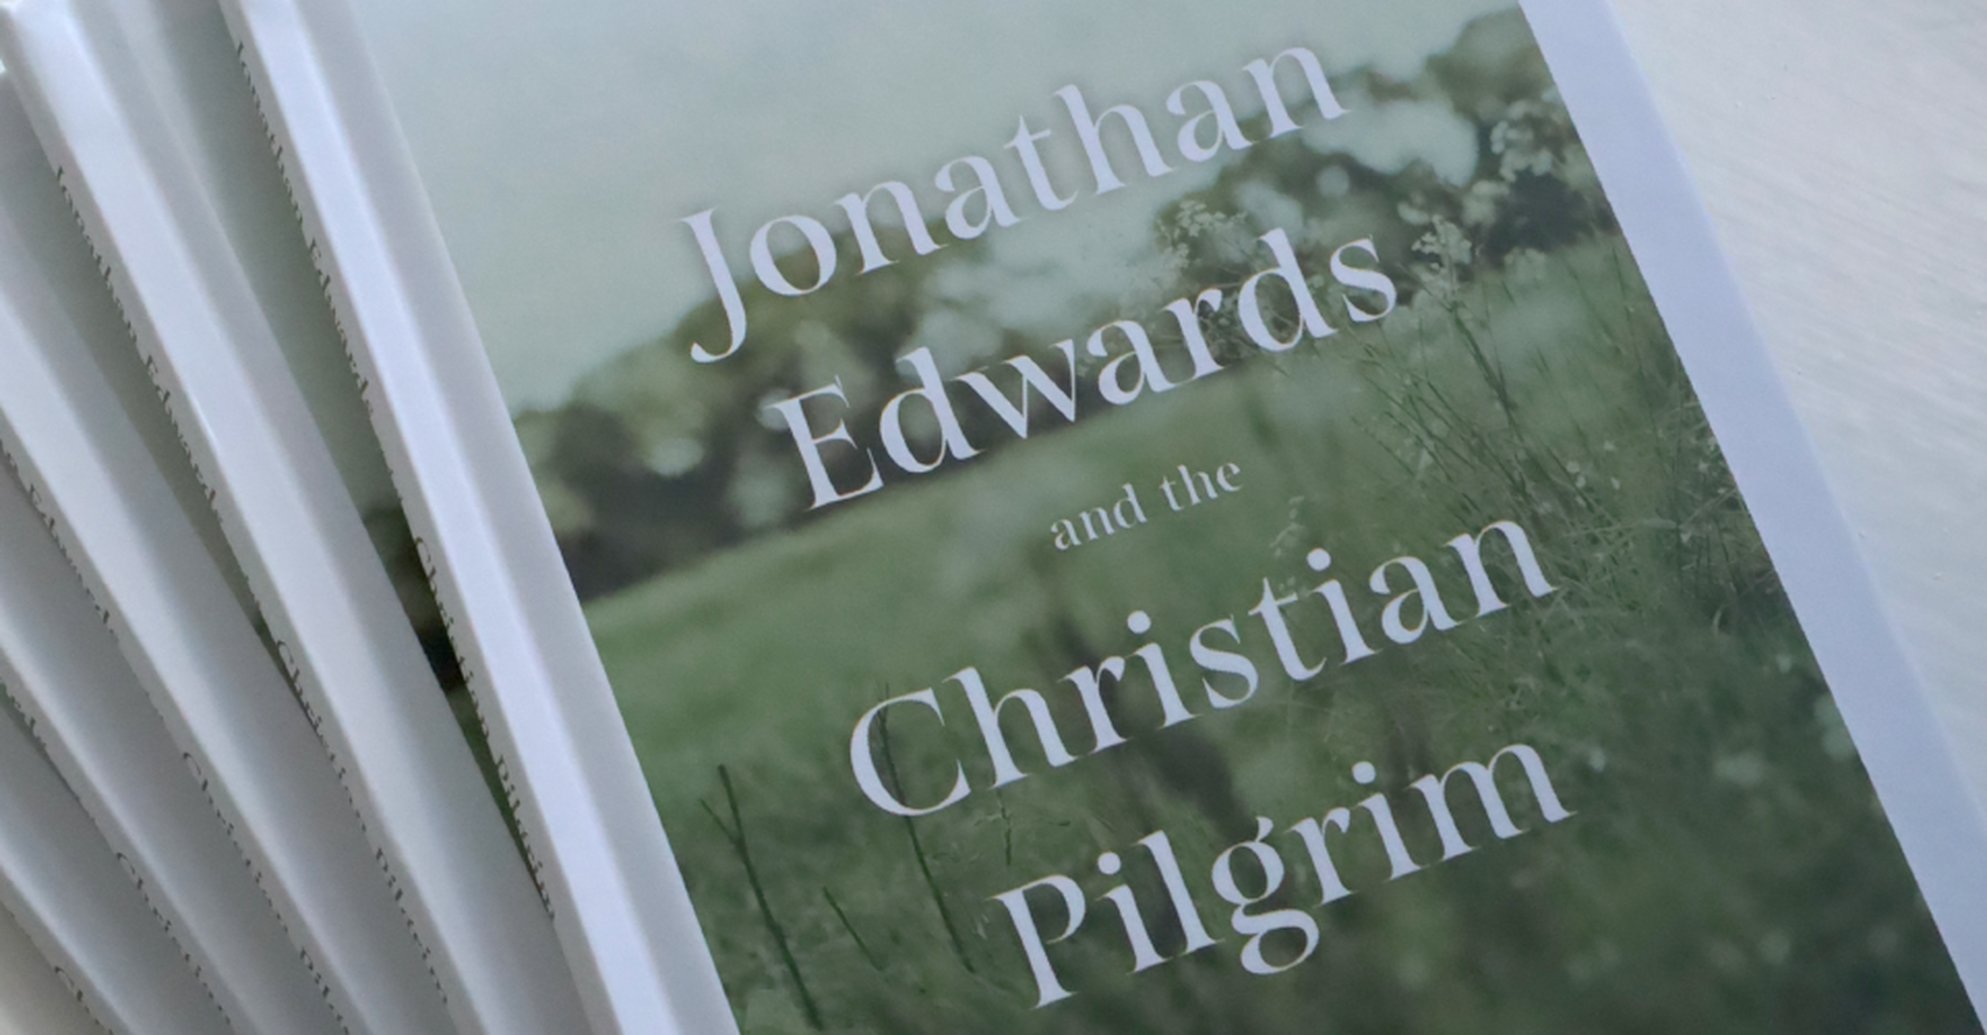 The Myth of Jonathan Edwards